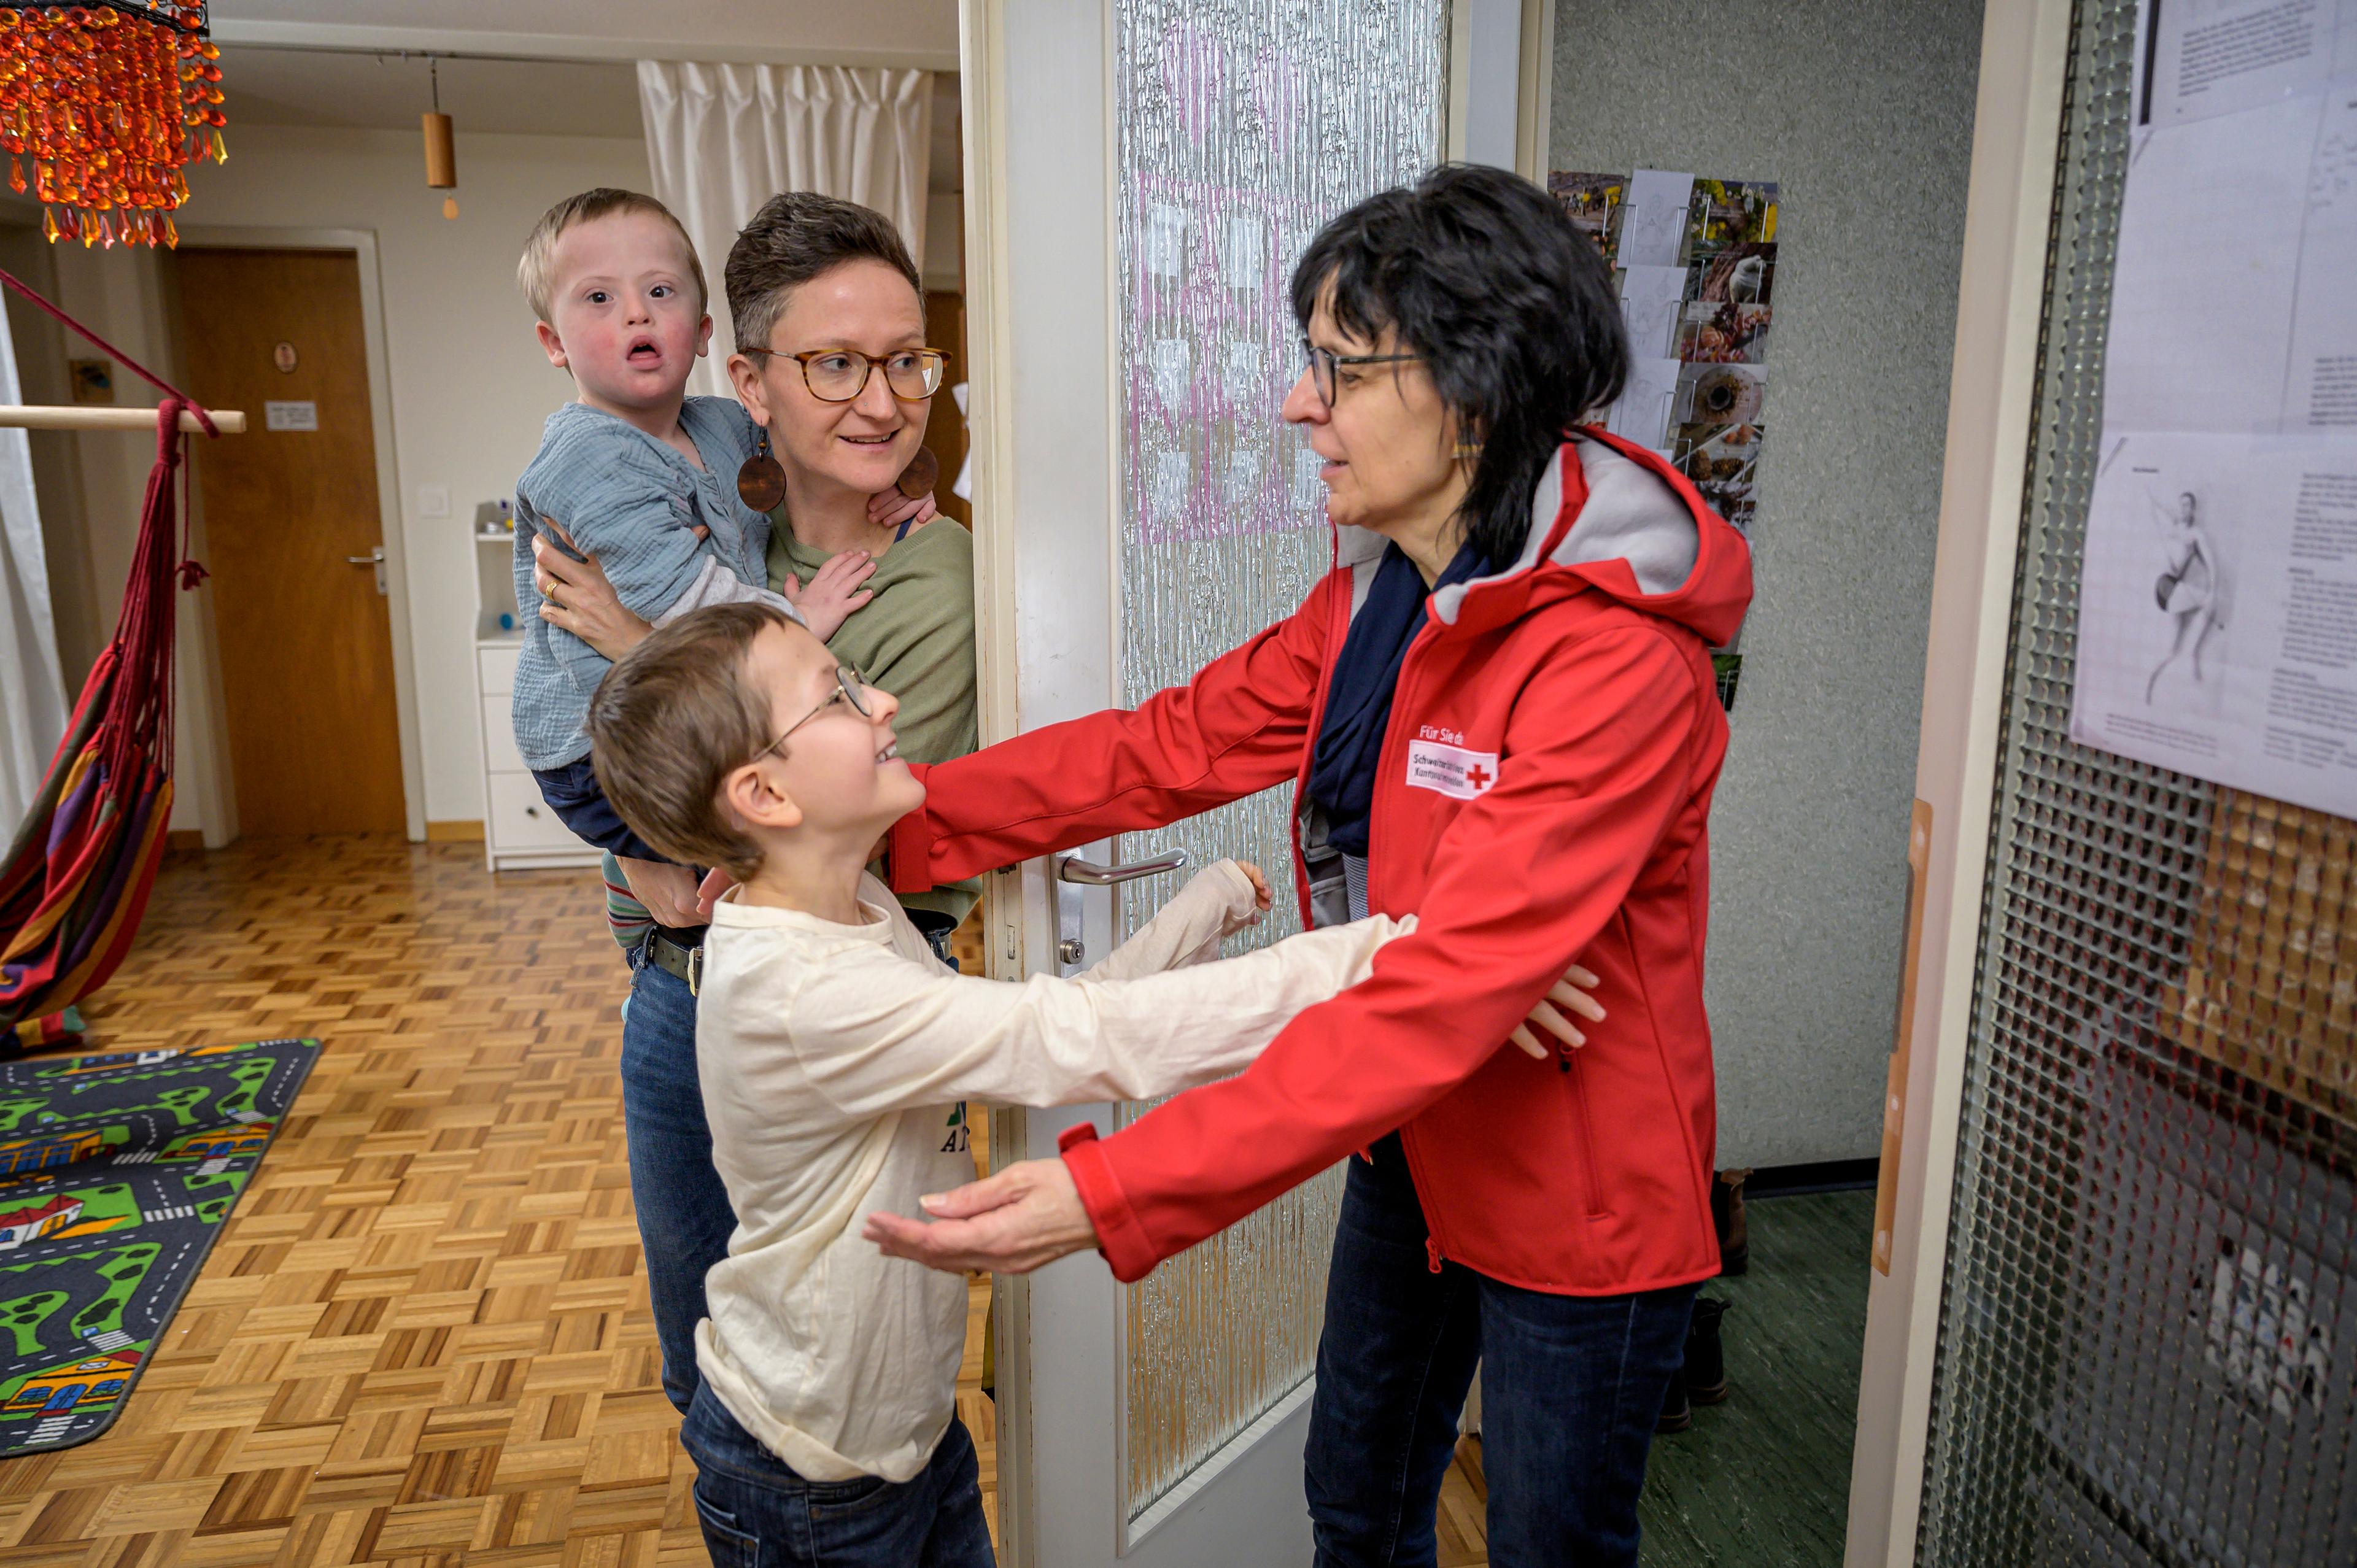 Une mère avec un petit enfant atteint de trisomie 21 dans les bras. Un enfant d'environ 10 ans salue la femme portant une veste rouge et le logo de la Croix-Rouge.